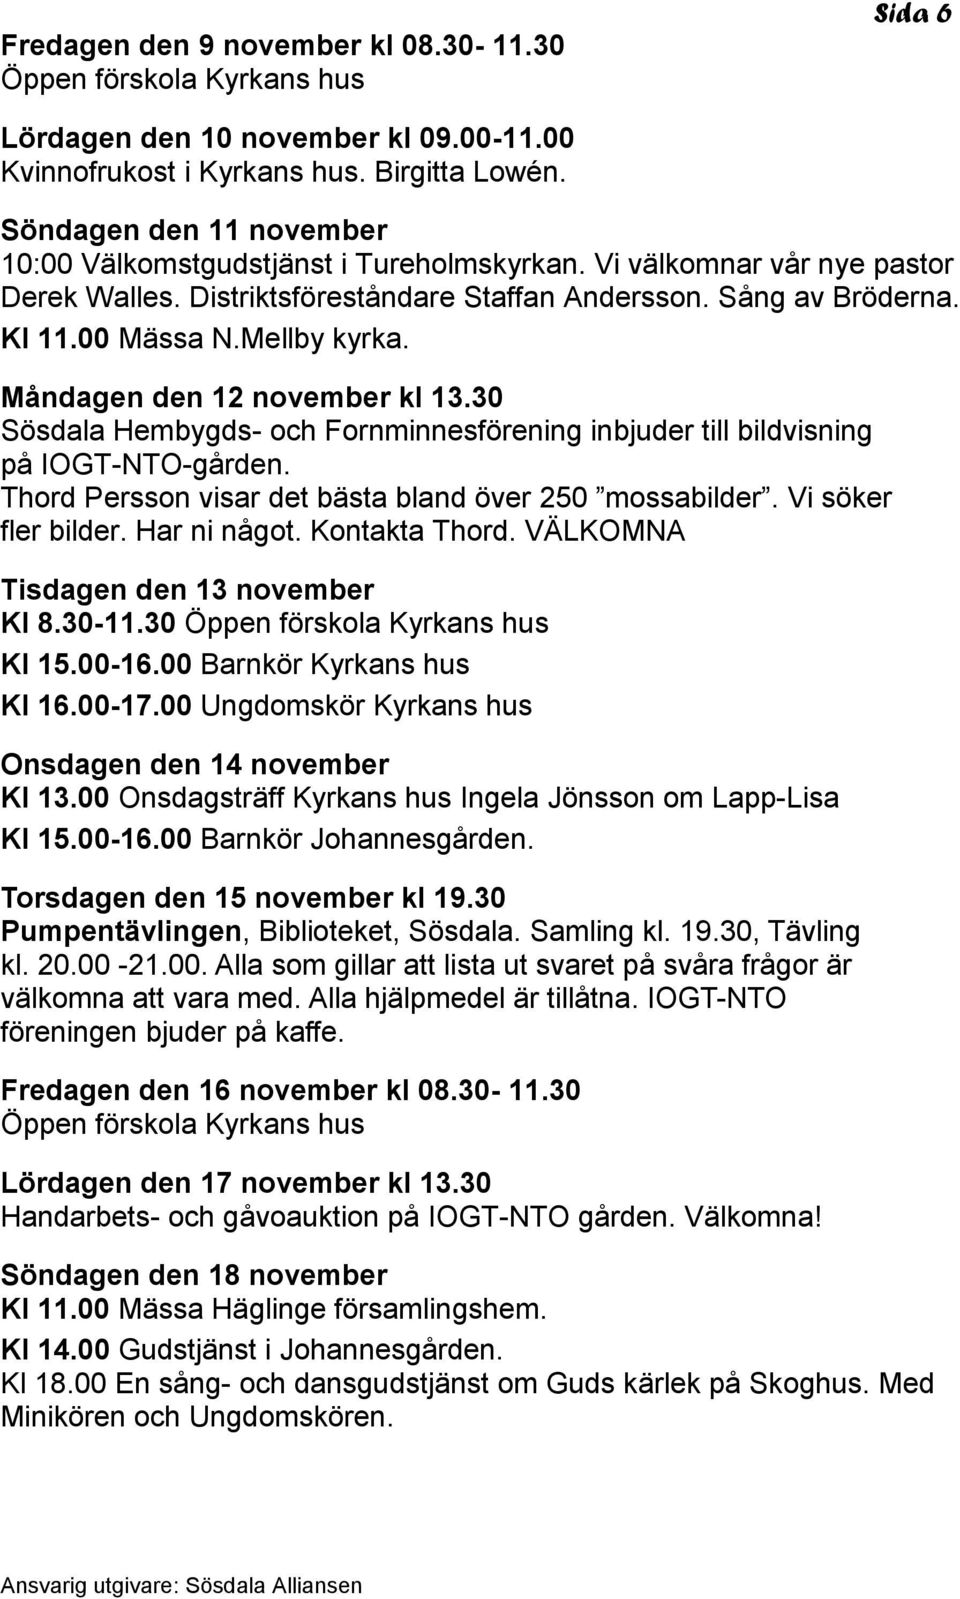 Måndagen den 12 november kl 13.30 Sösdala Hembygds- och Fornminnesförening inbjuder till bildvisning på IOGT-NTO-gården. Thord Persson visar det bästa bland över 250 mossabilder. Vi söker fler bilder.